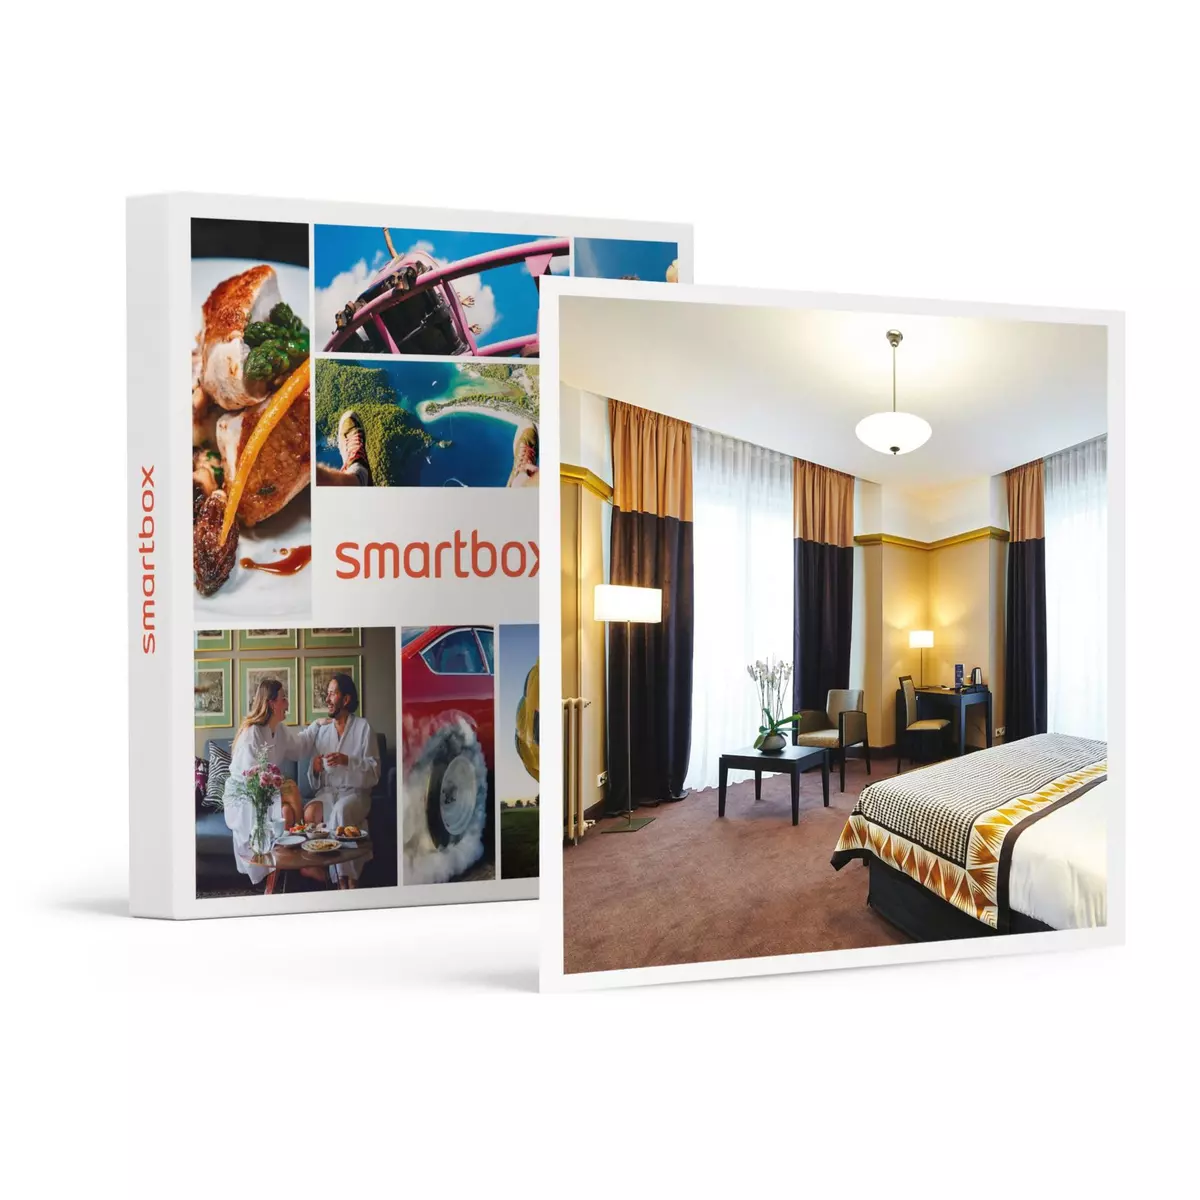 Smartbox 2 jours avec accès à l'espace détente, modelage et dîner en hôtel 4* à Dax - Coffret Cadeau Séjour